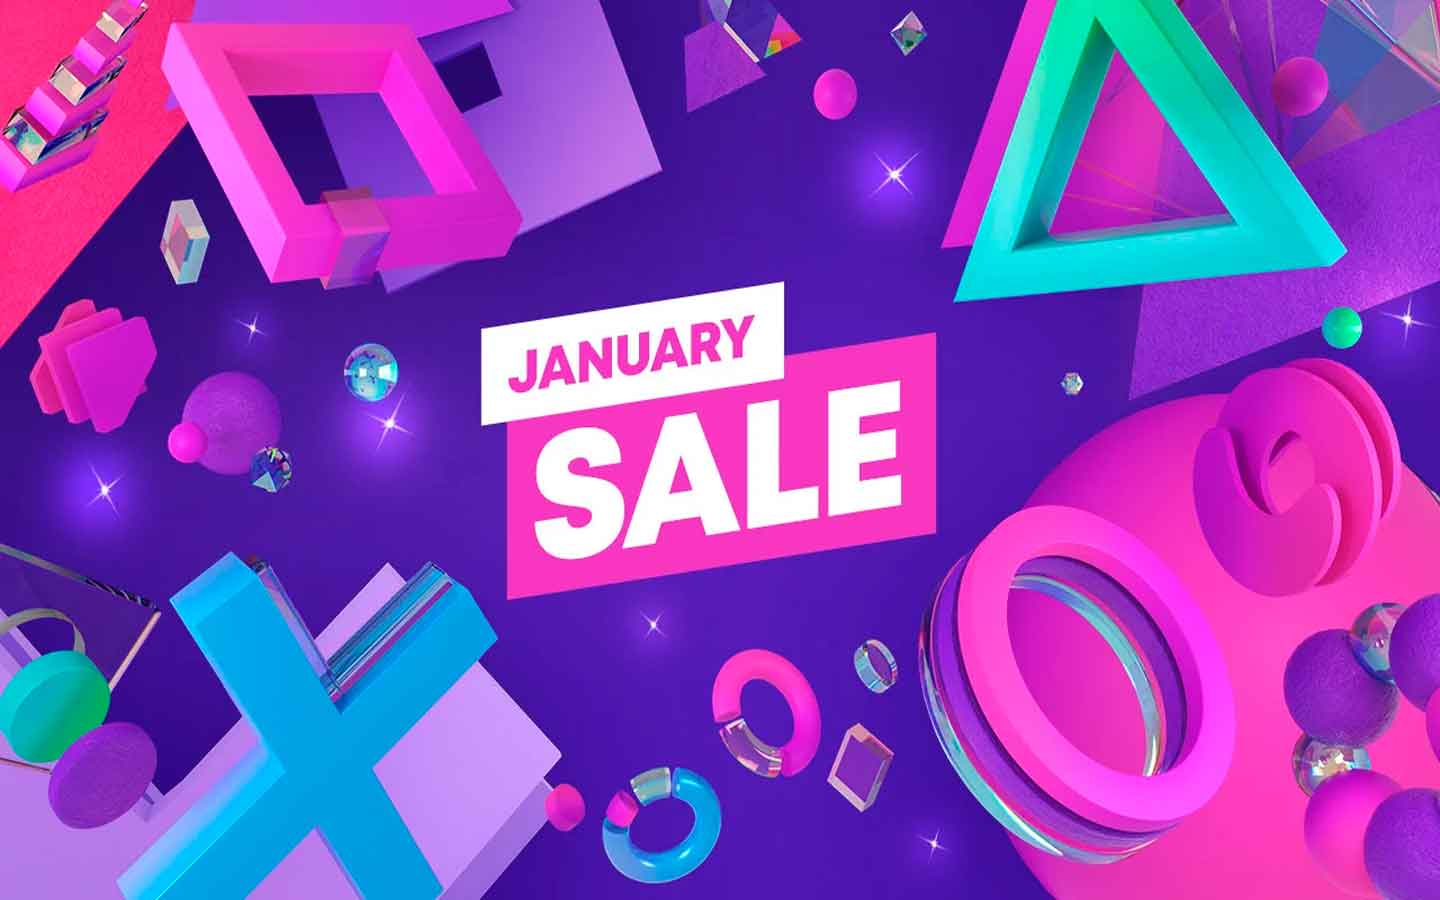 La 'enorme' oferta de enero de PlayStation Store se dará a conocer el 22 de diciembre